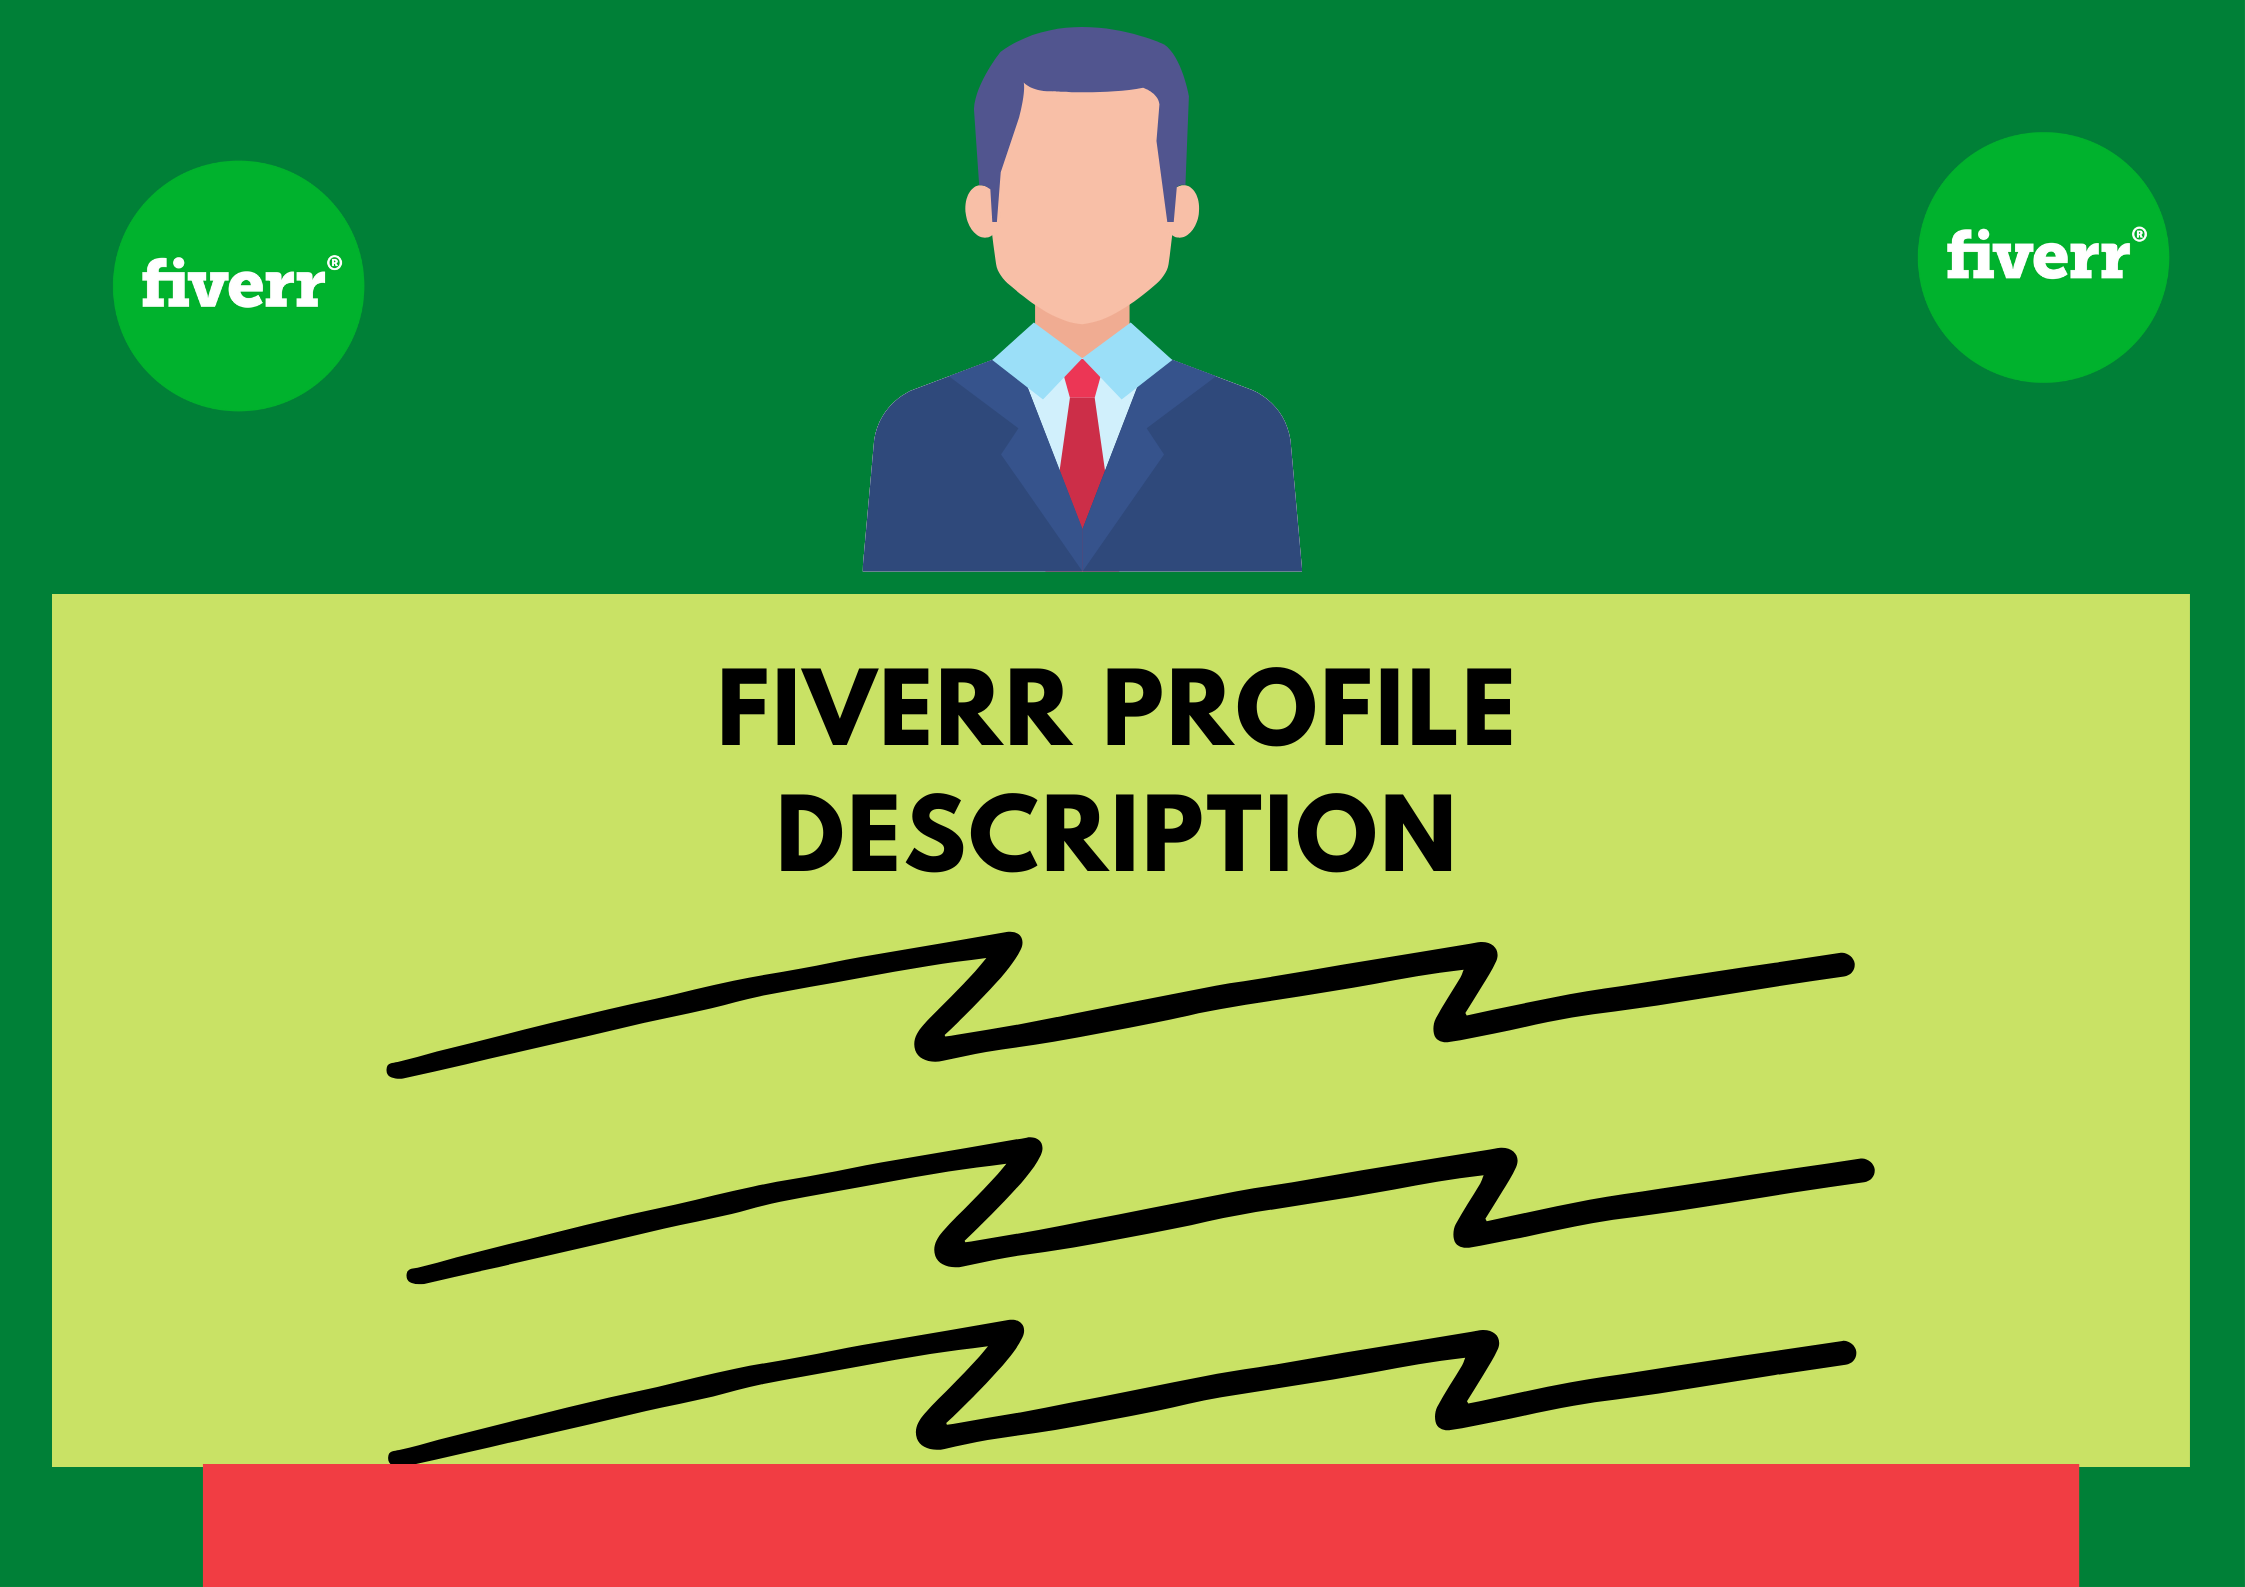 fiverr profile descriprion